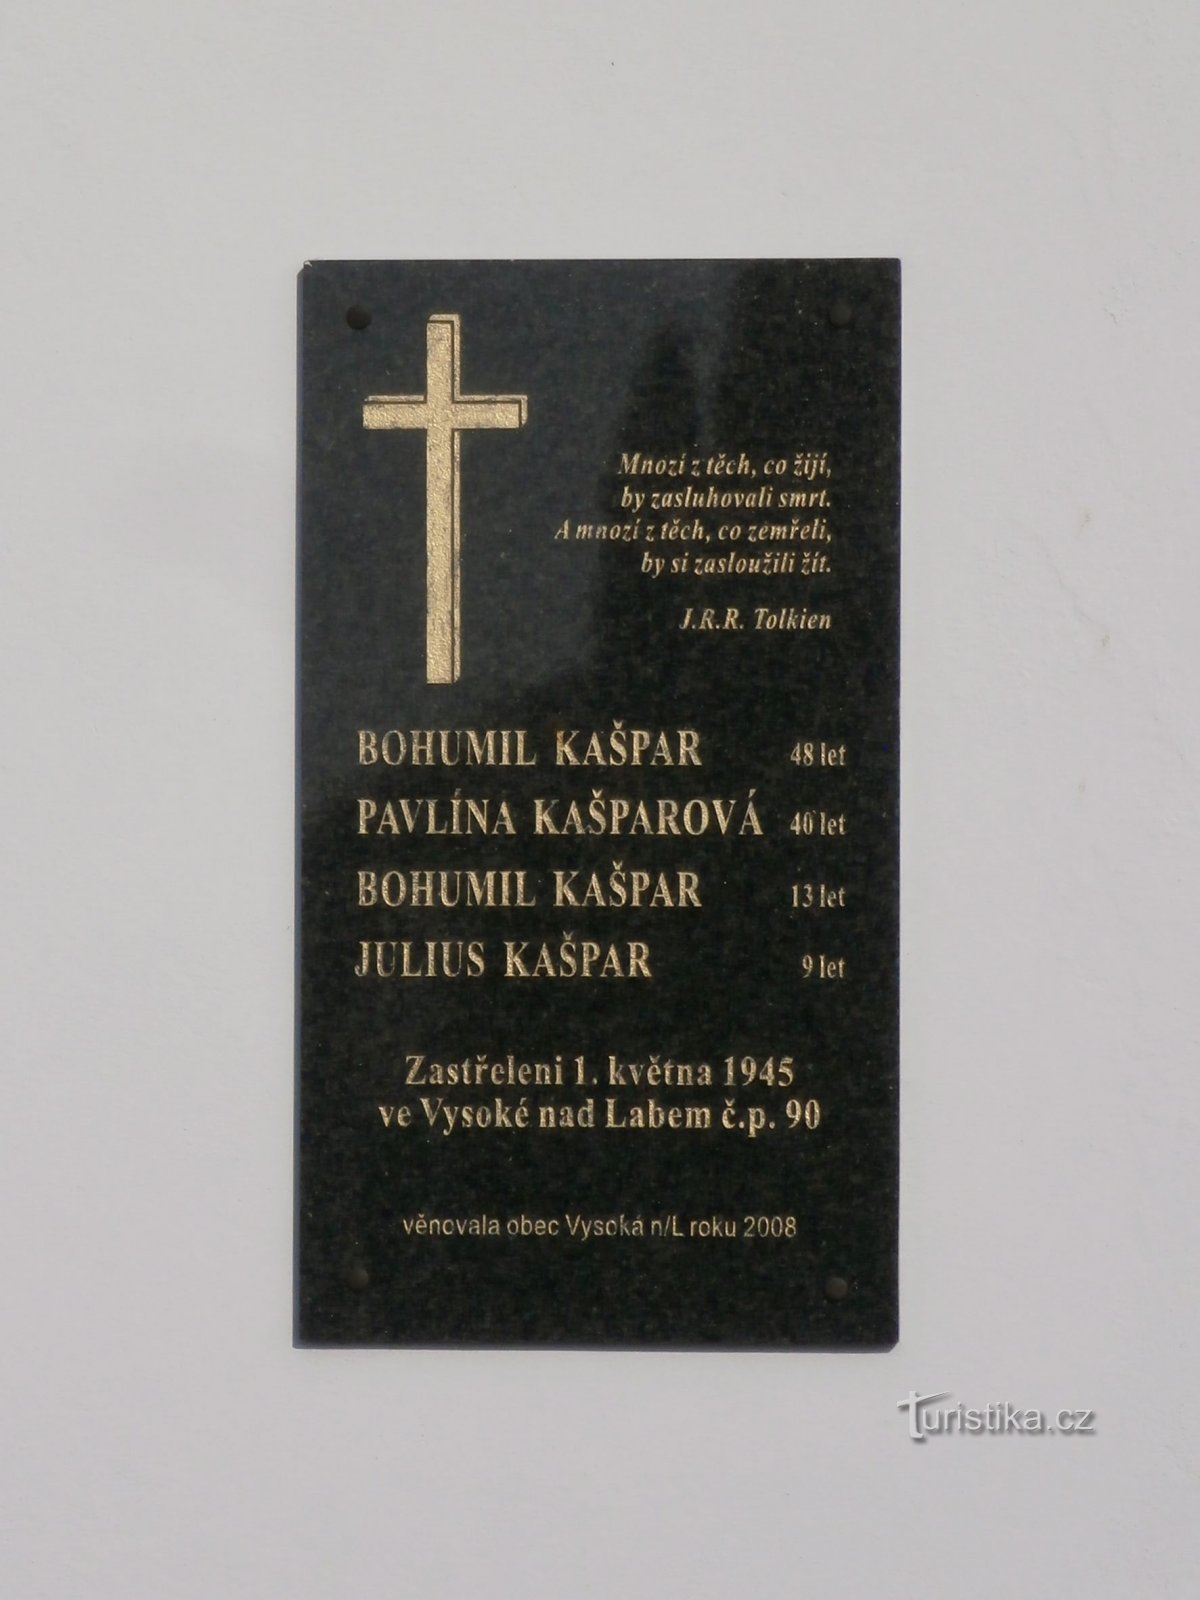 Placa em homenagem à família Kašparov assassinada (Vysoká nad Labem, 13.2.2017/XNUMX/XNUMX)